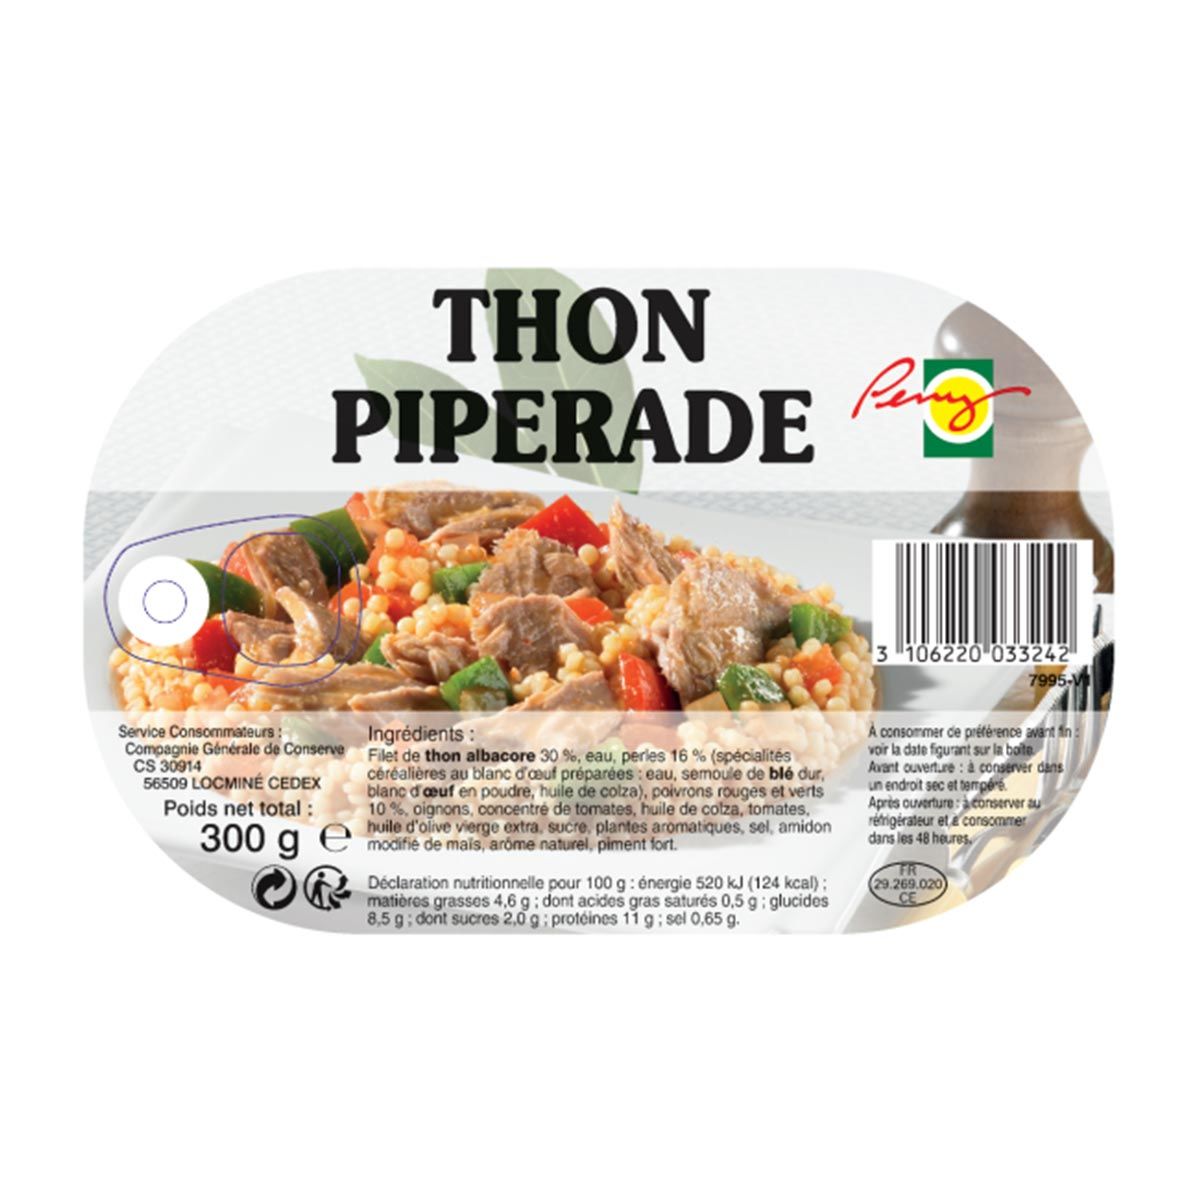 Tuna with piperade